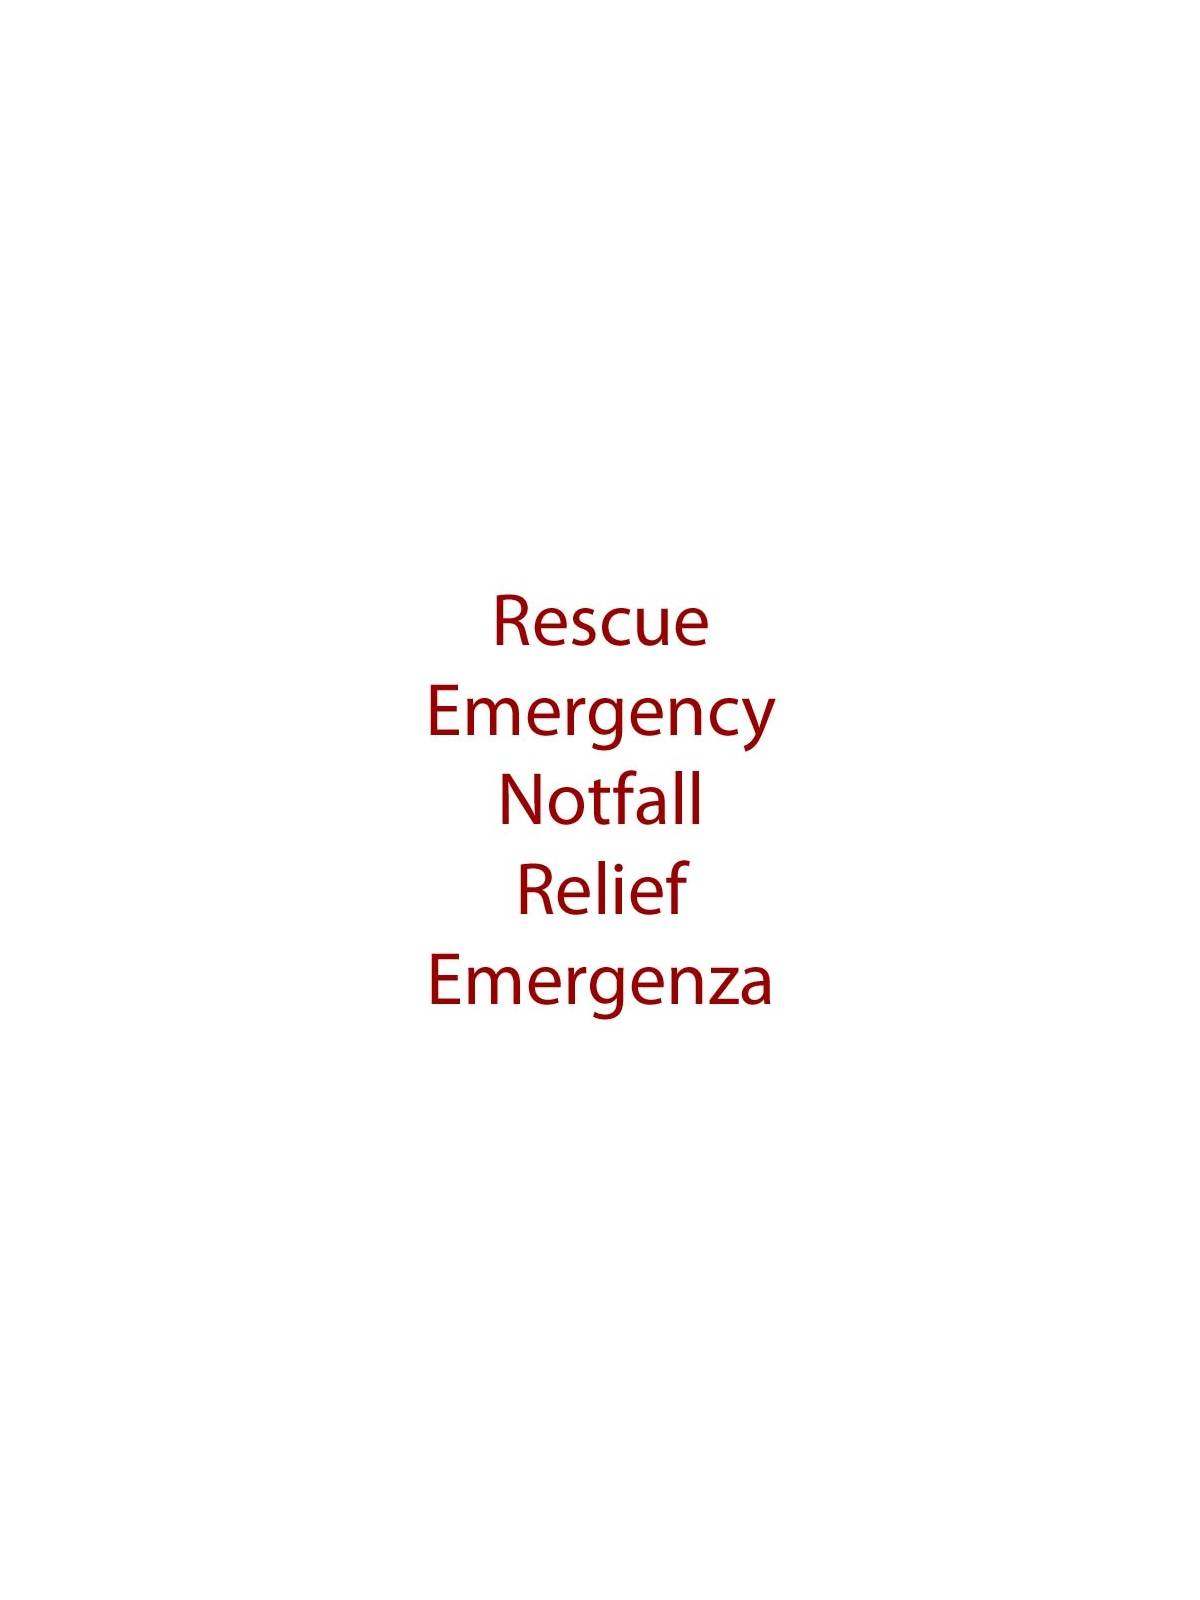 Emergenza Emergency Nr. 39 Fiori di Bach BIO